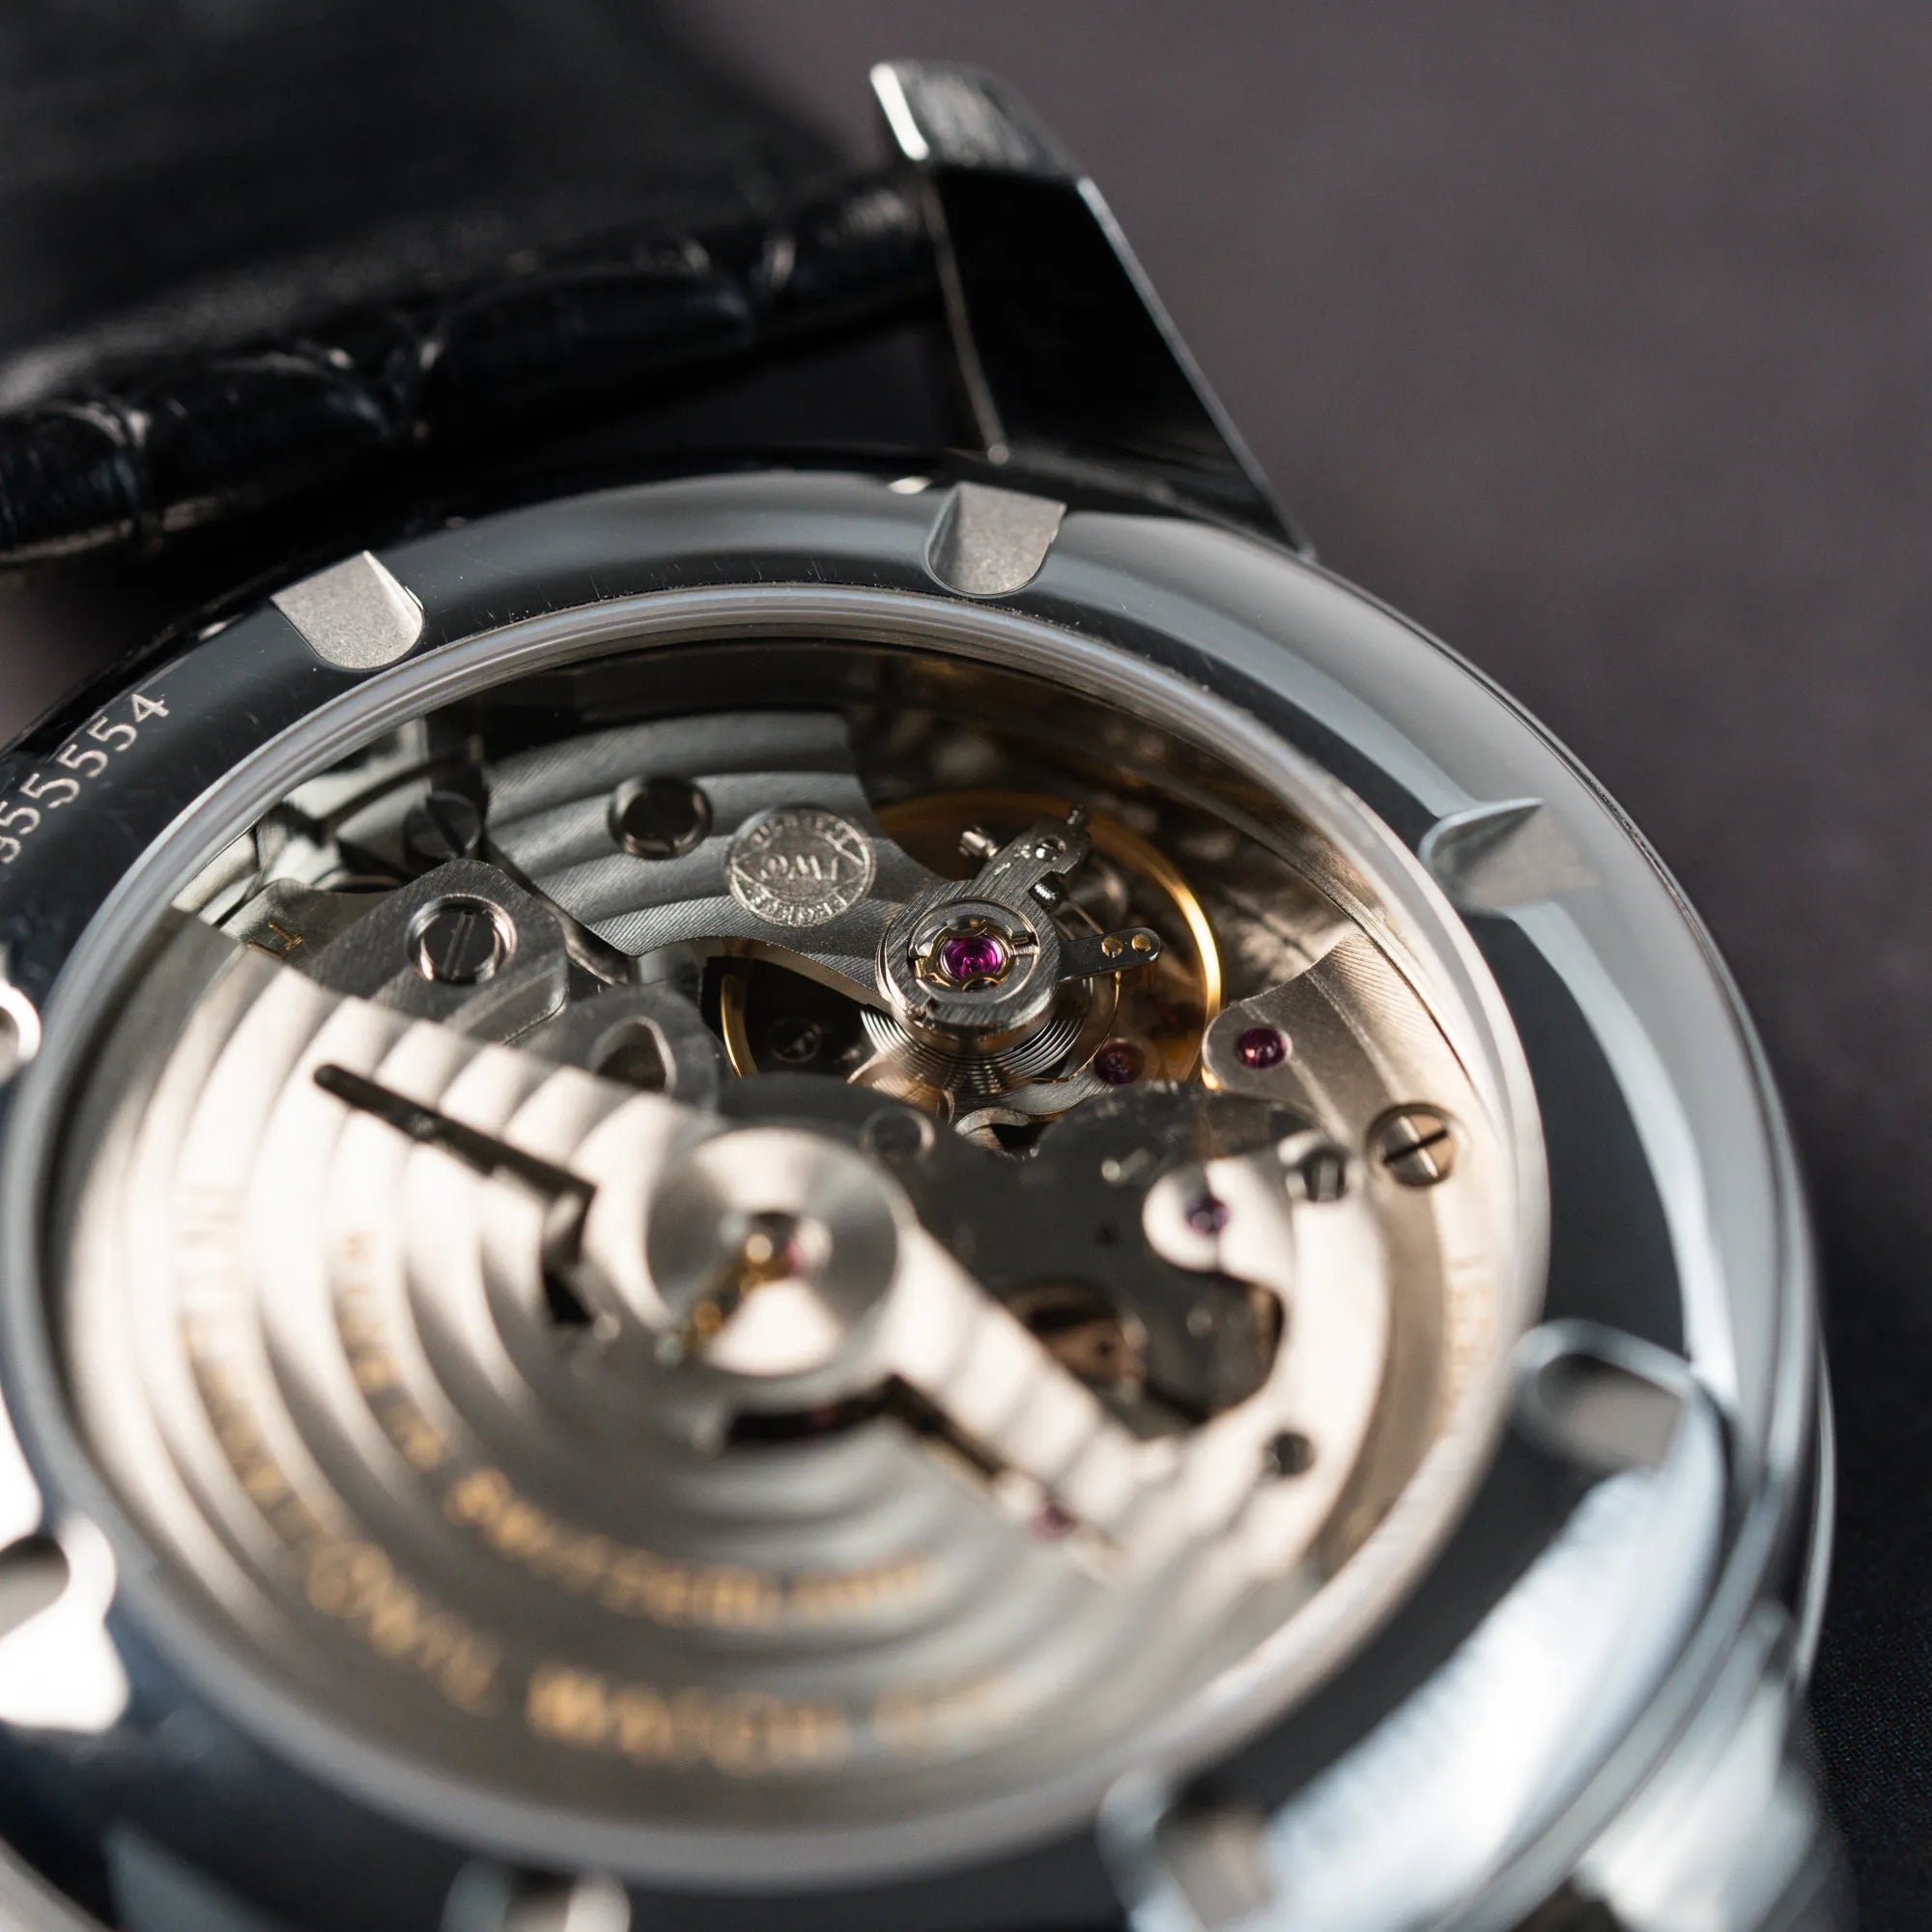 Detailaufnahme des Sichtbodens und Uhrwerks der IWC Schaffhausen Uhr "Ingenieur" mit der Referenz IW323301 mit schwarzem Zifferblatt